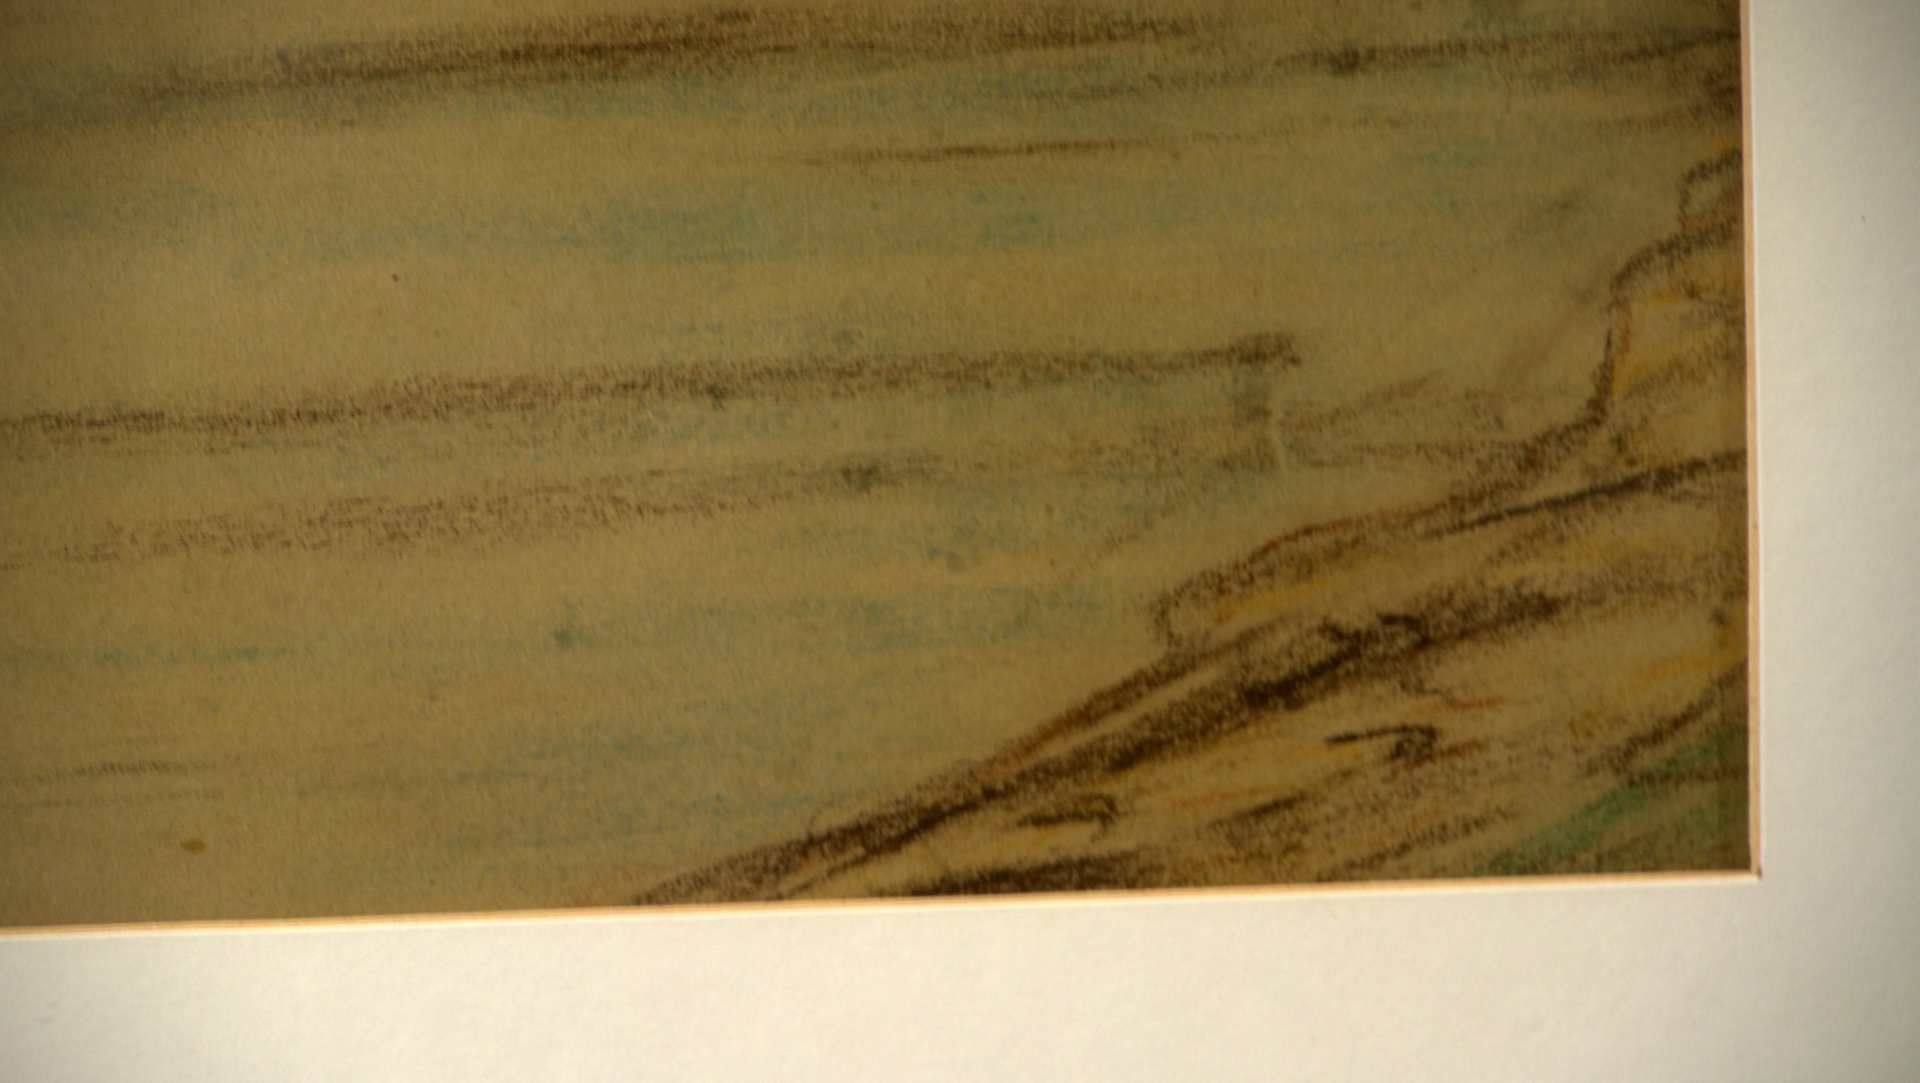 TH. Stein (Rheinischer Maler um 1900), "Marksburg bei Braubach", Pastellzeichnung/Tonpapier< - Image 2 of 2